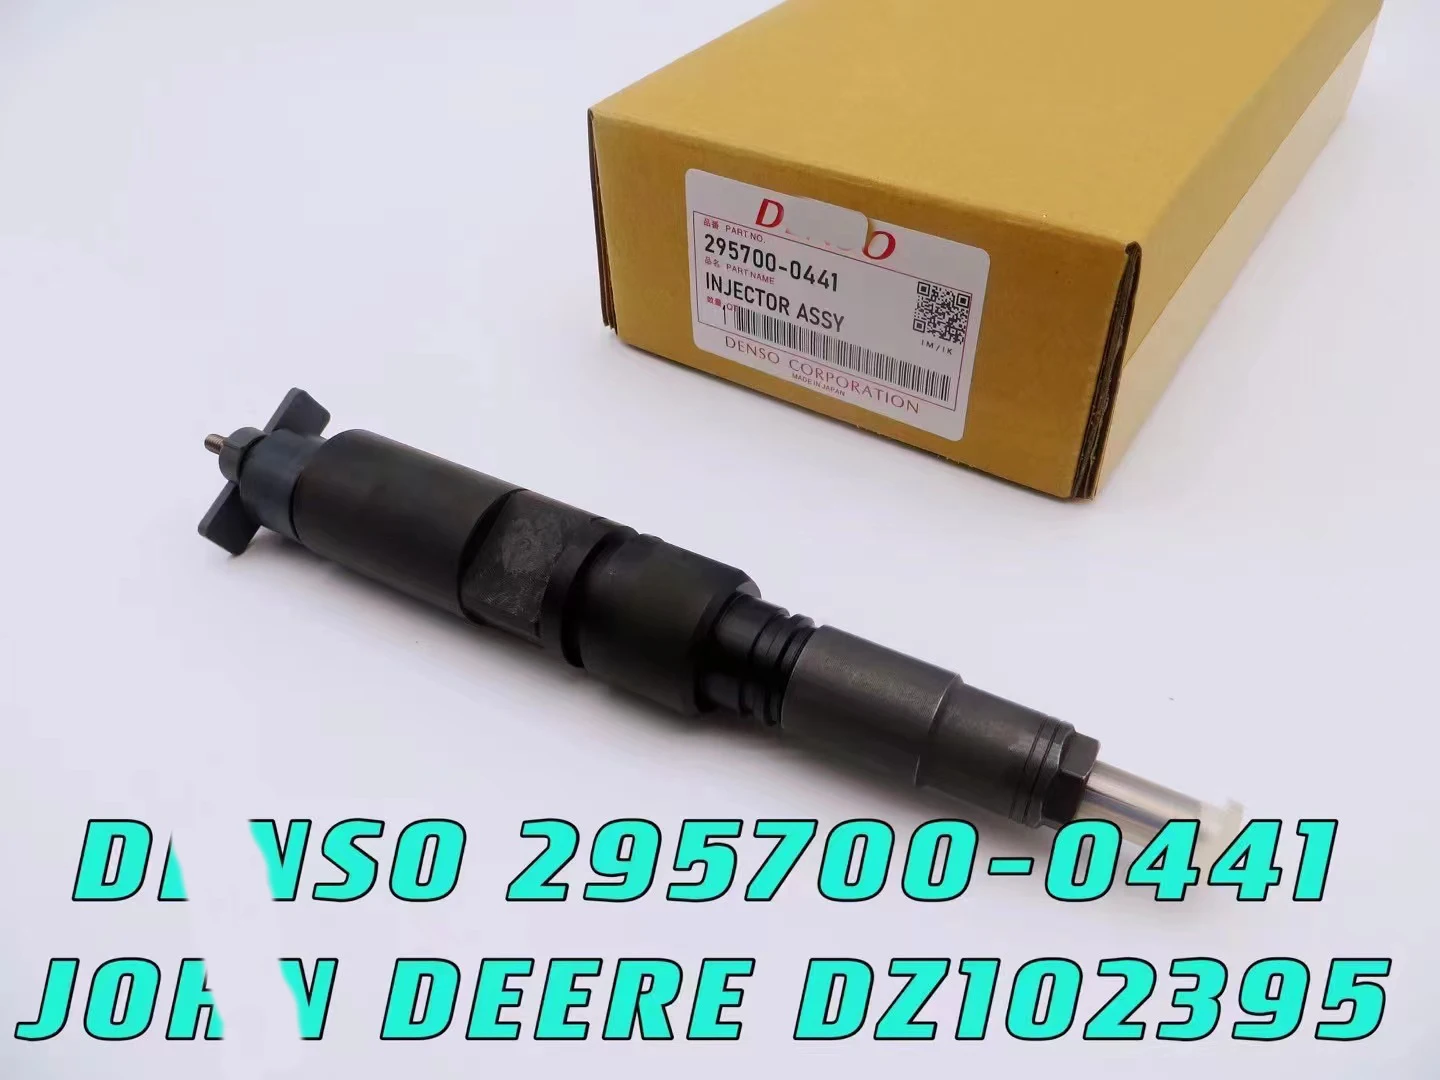 

Genuine New Diesel Fuel Injector 295700-0441, DZ102395